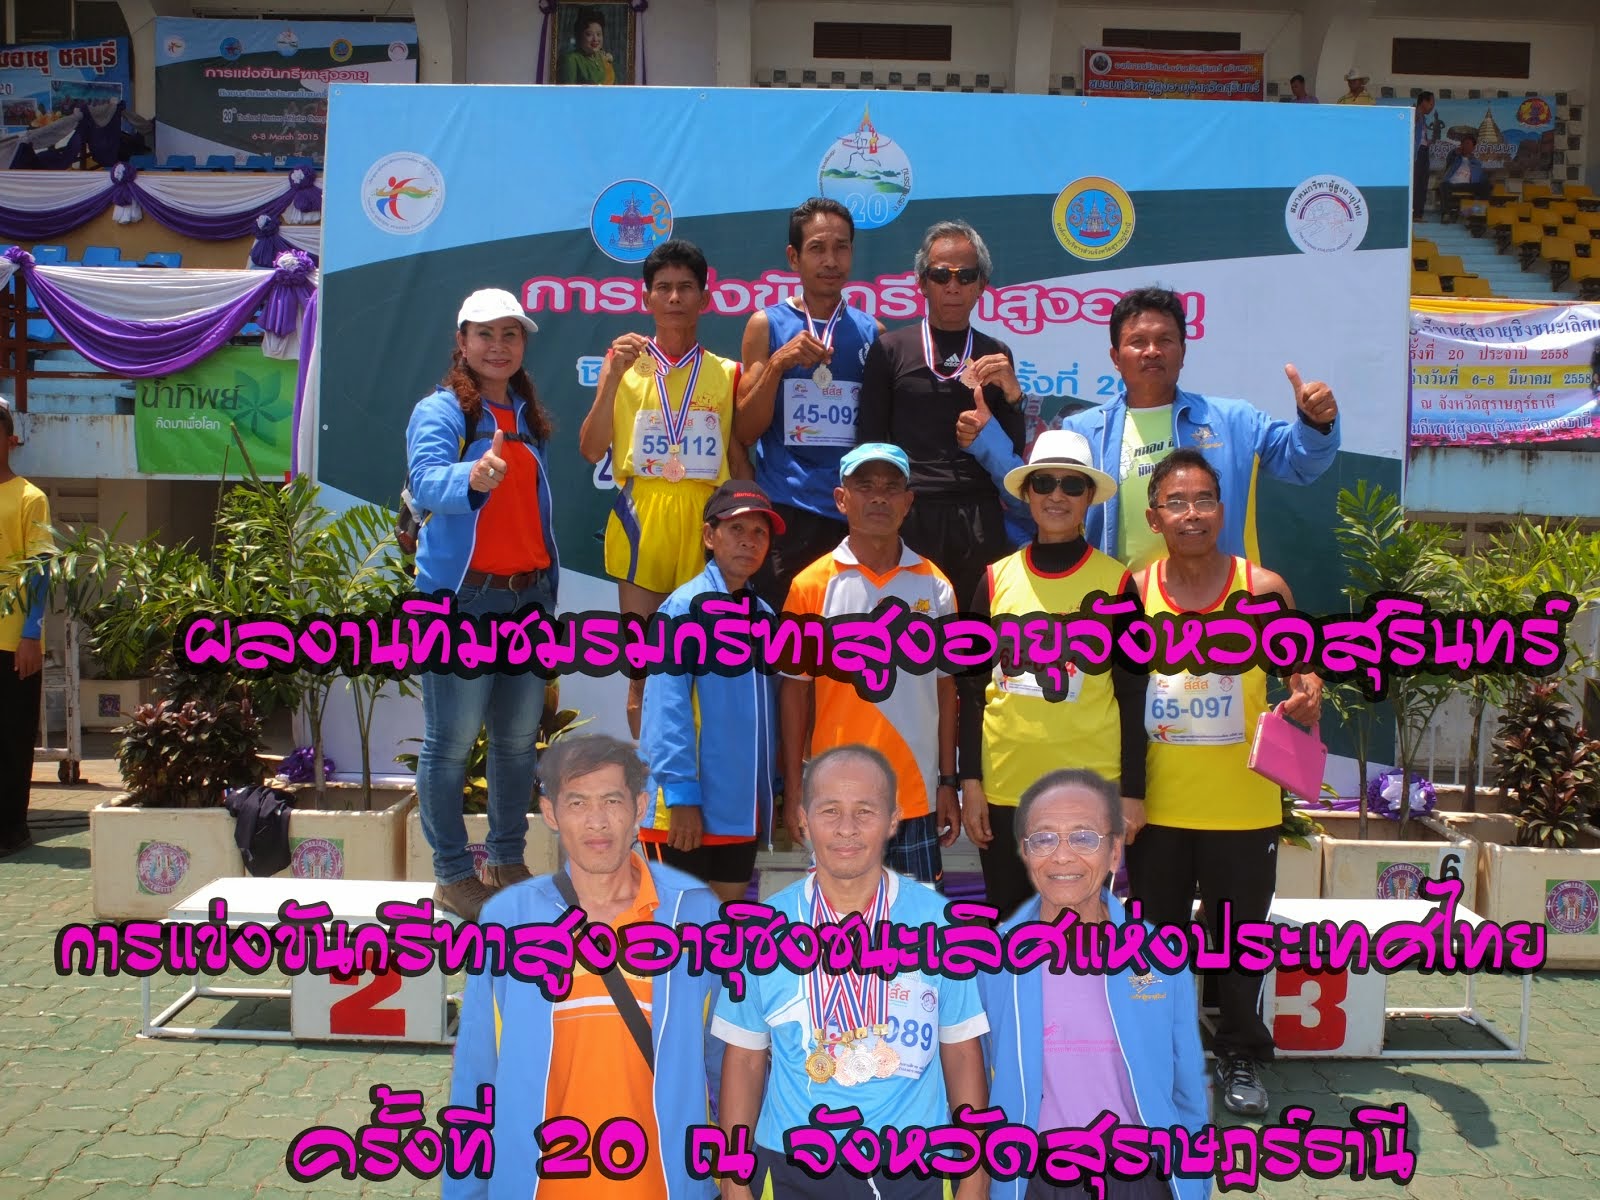 ผลงานชมรมกรีฑาสูงอายุจังหวัดสุรินทร์ การแข่งขันกรีฑาสูงอายุ ชิงชนะเลิศแห่งประเทศไทย สุราษฎร์ธานี